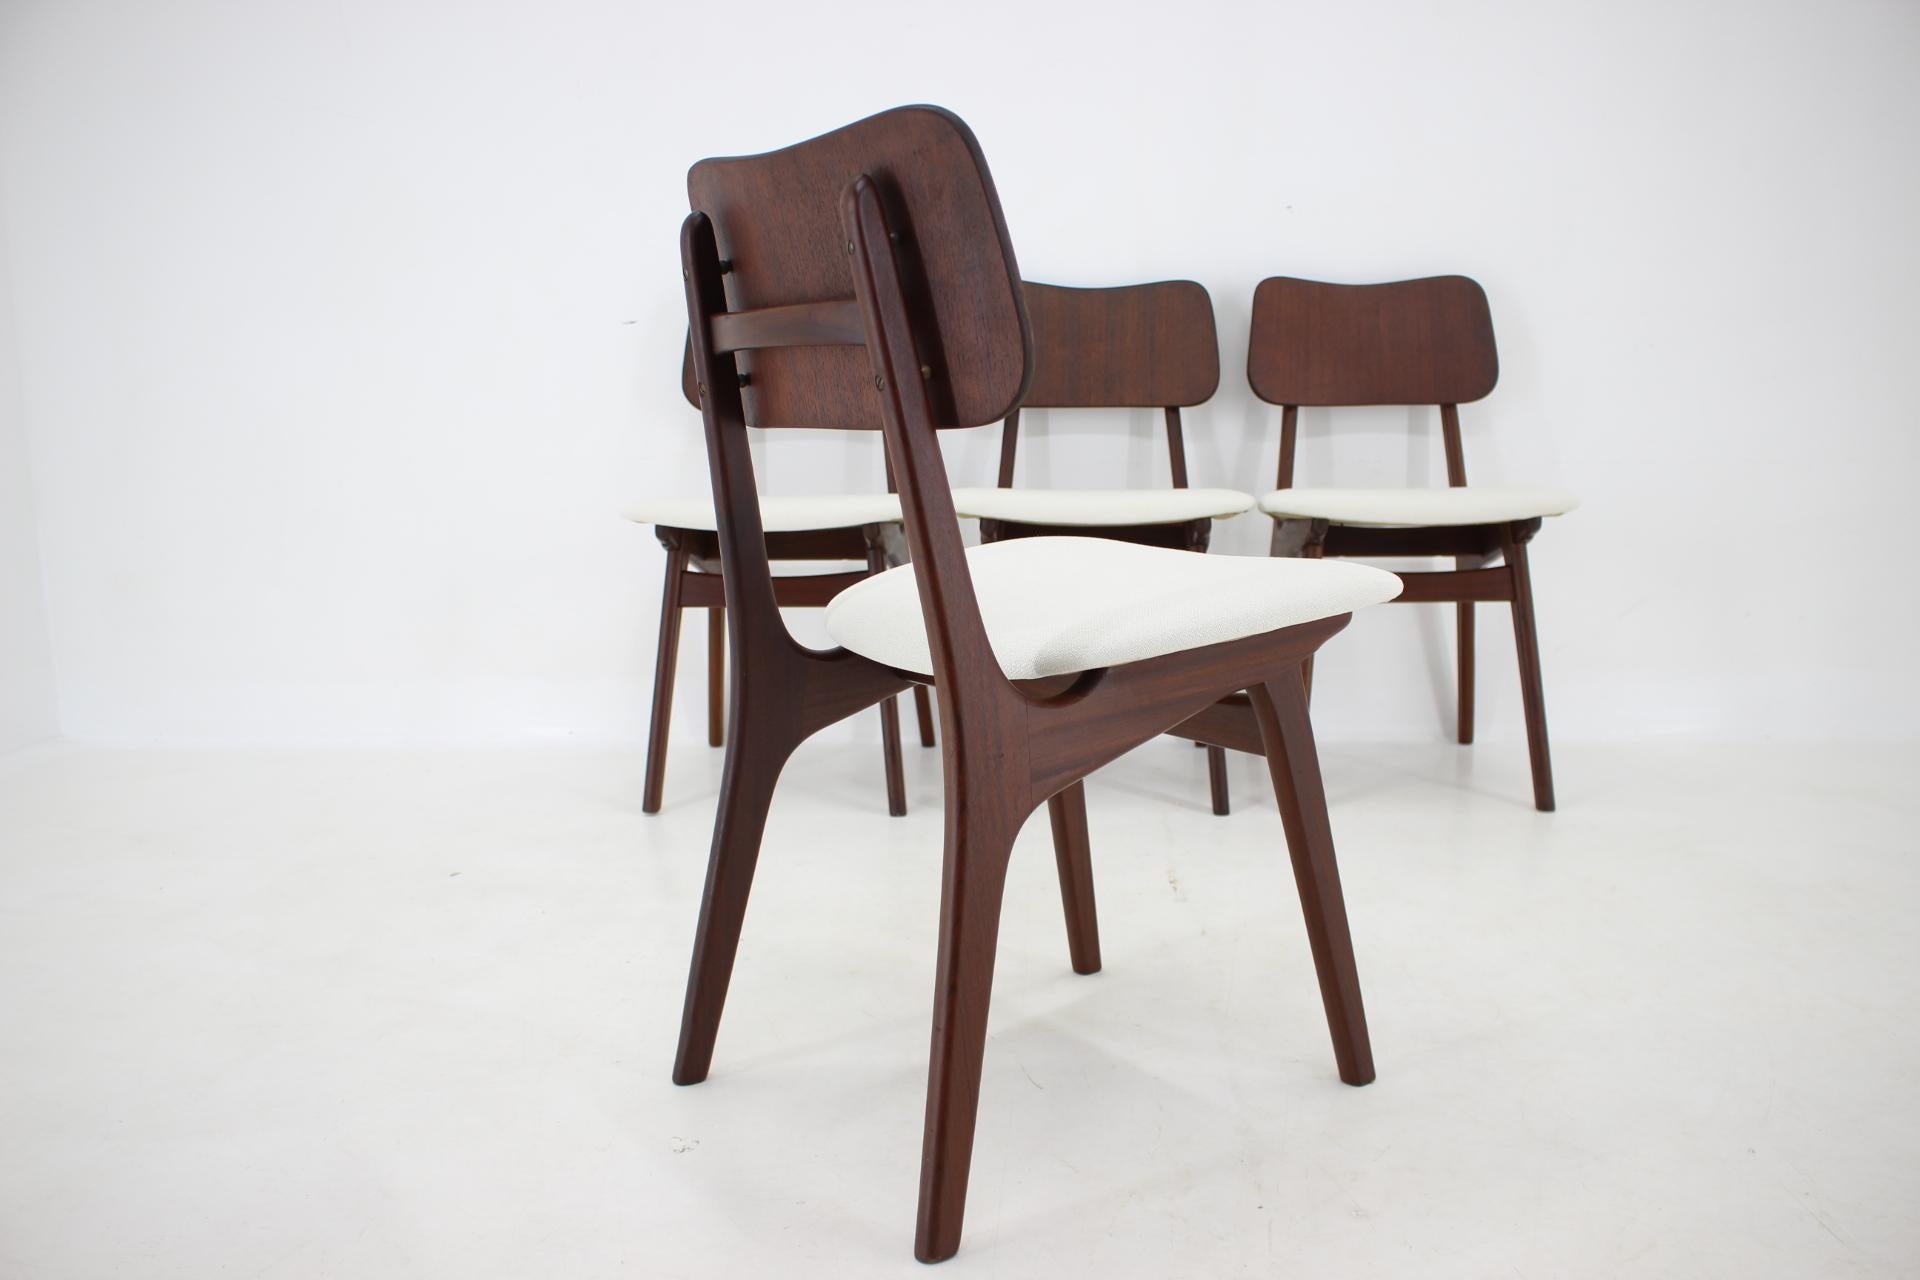 1960s Ib Kofod-Larsen Set Of 4 teak Dining Chairs Model 74, Denmark For Sale 1